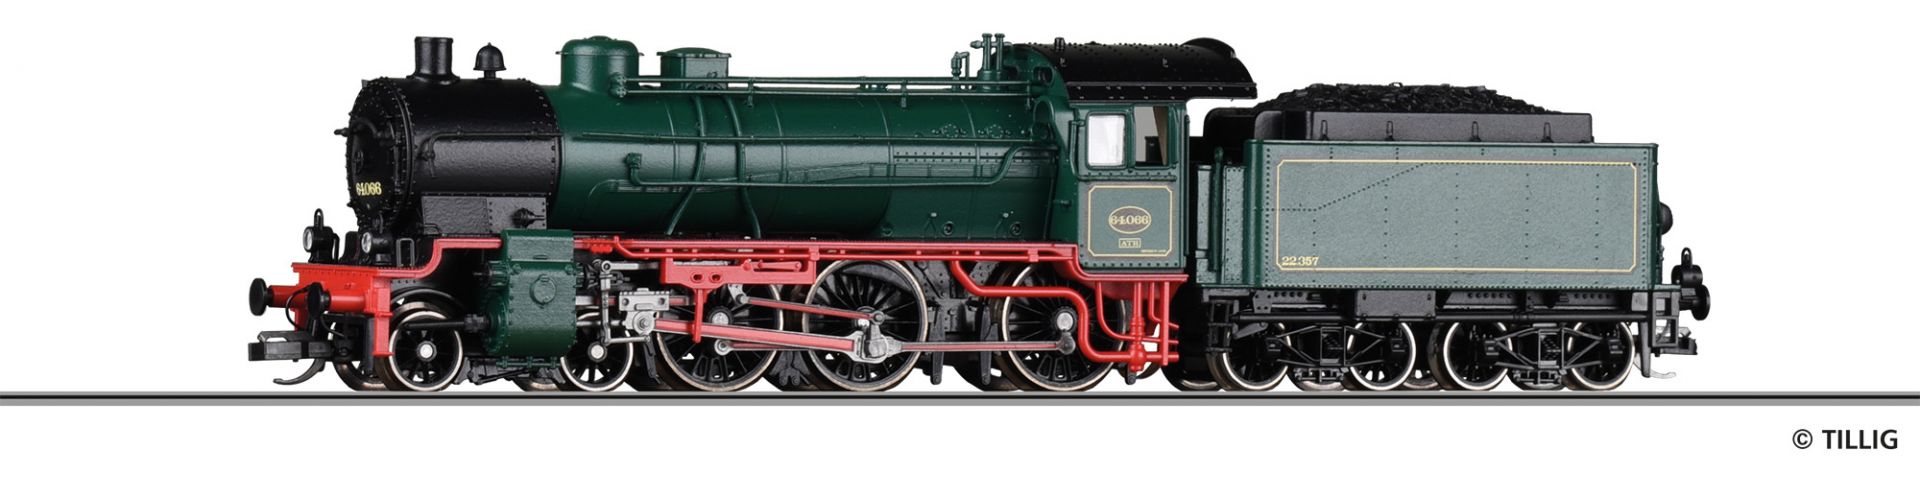 02034 | Dampflokomotive SNCB -werksseitig ausverkauft-